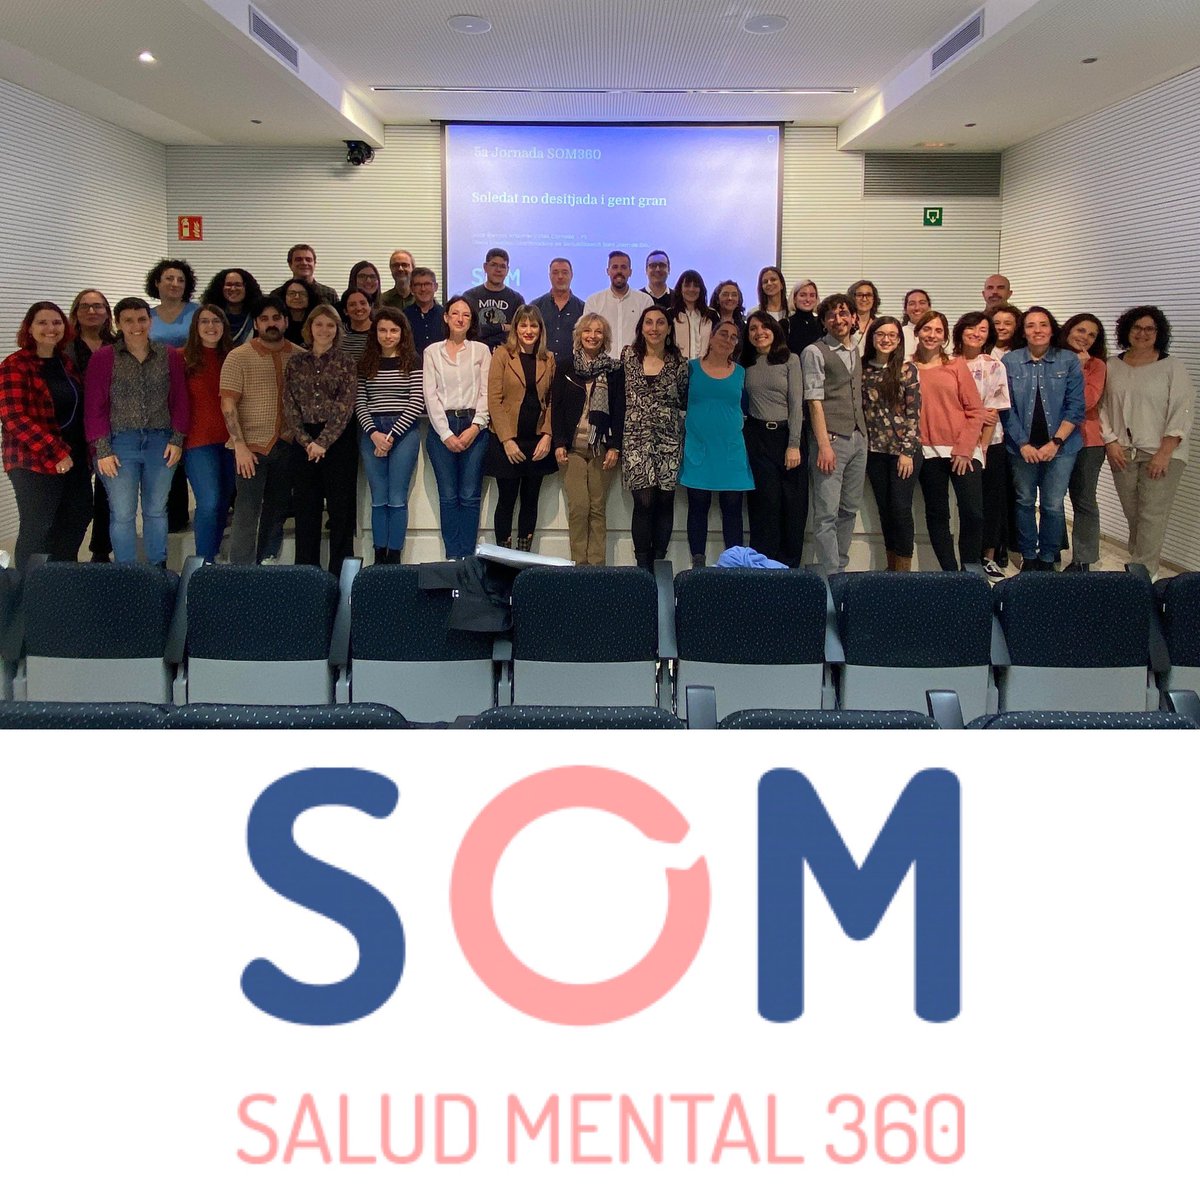 V Jornada del equipo impulsor de la plataforma digital @SaludMentalSJD. El proyecto ya se ha consolidado como el espacio de referencia del conocimiento en salud mental. ¡Muchas gracias a todas las personas que lo hacen posible! som360.org